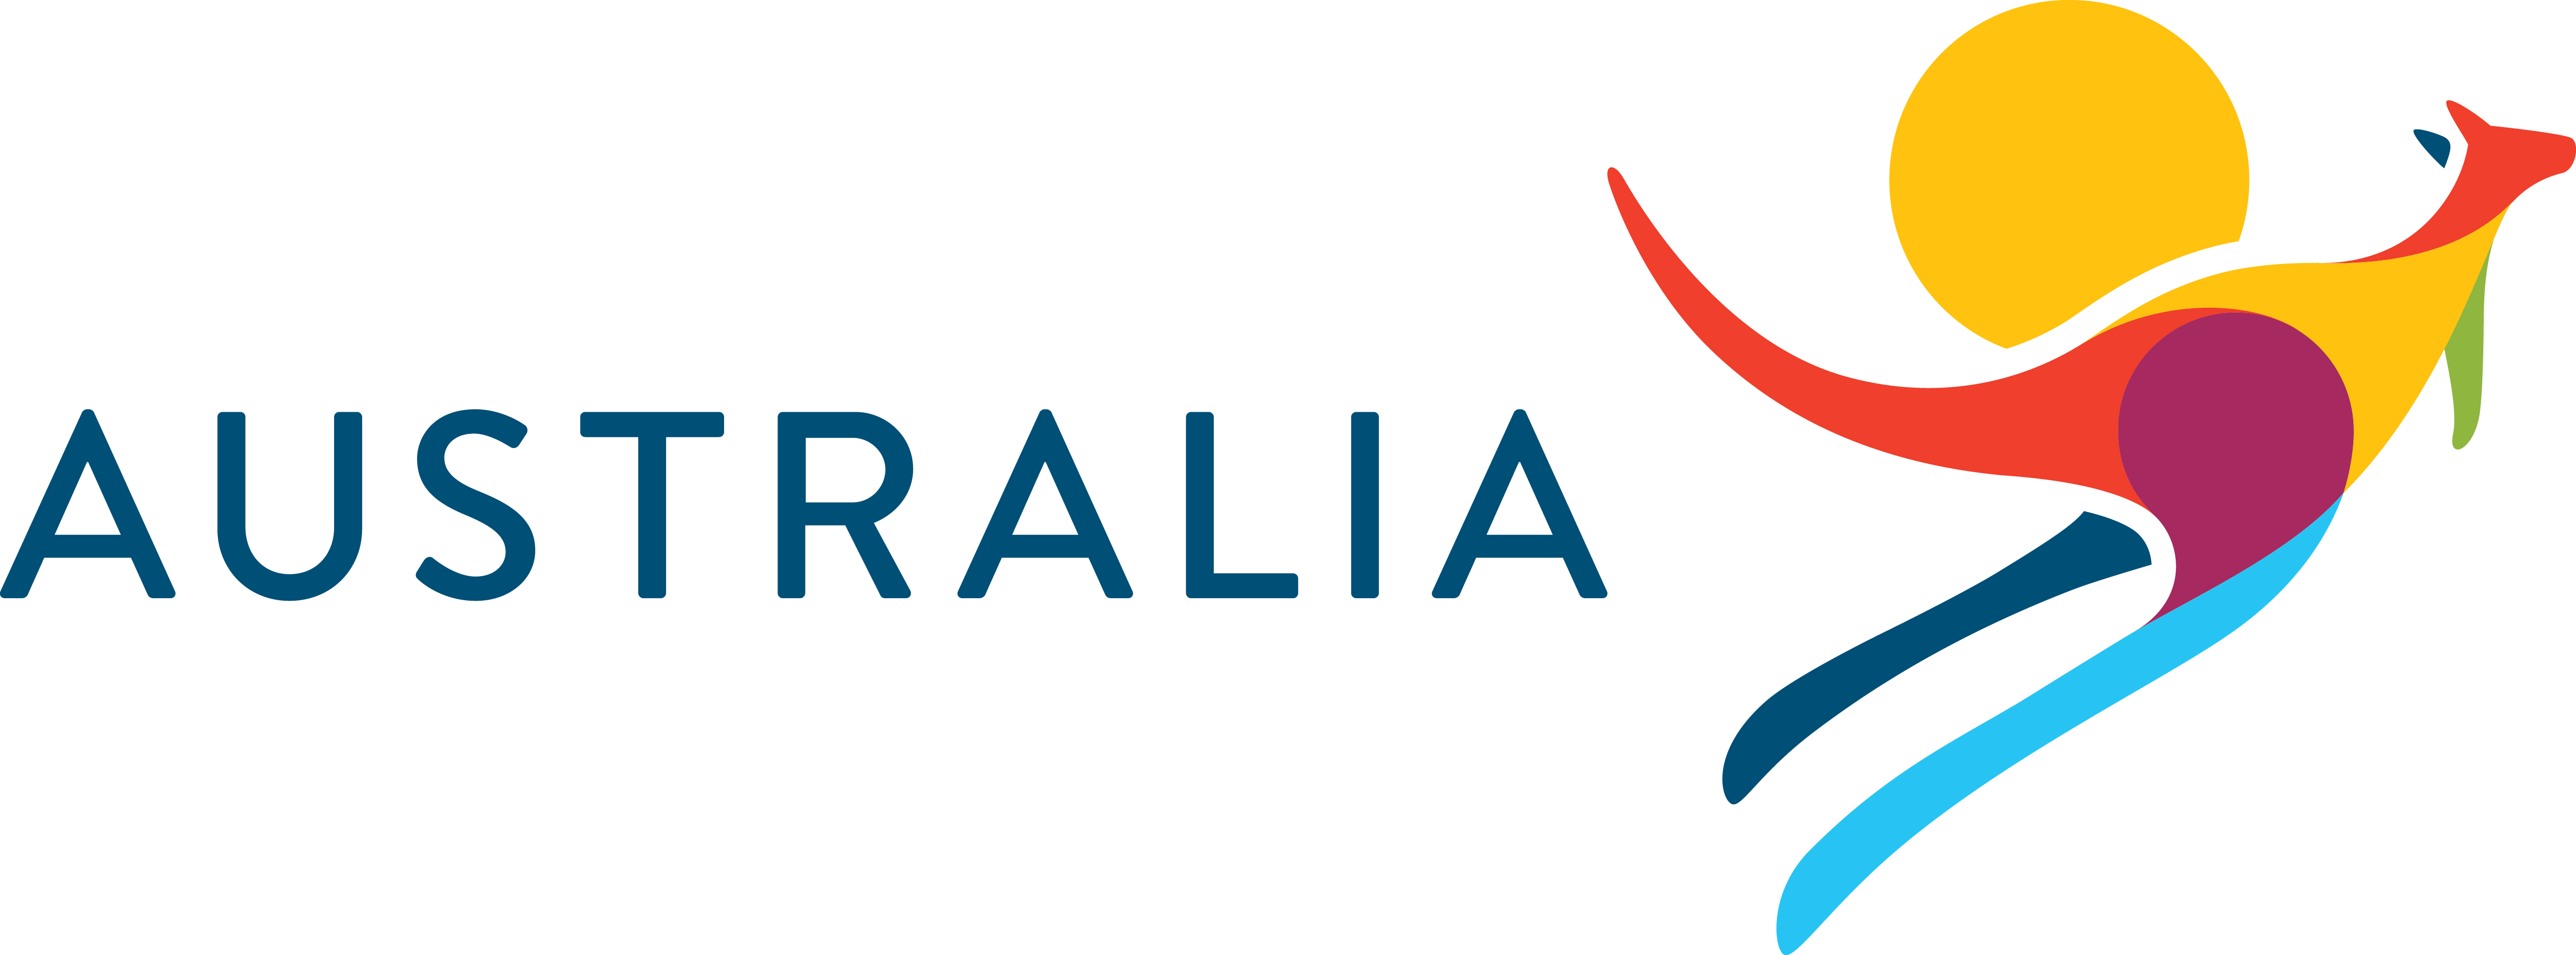 SUPERYACHT AUSTRALIA logo